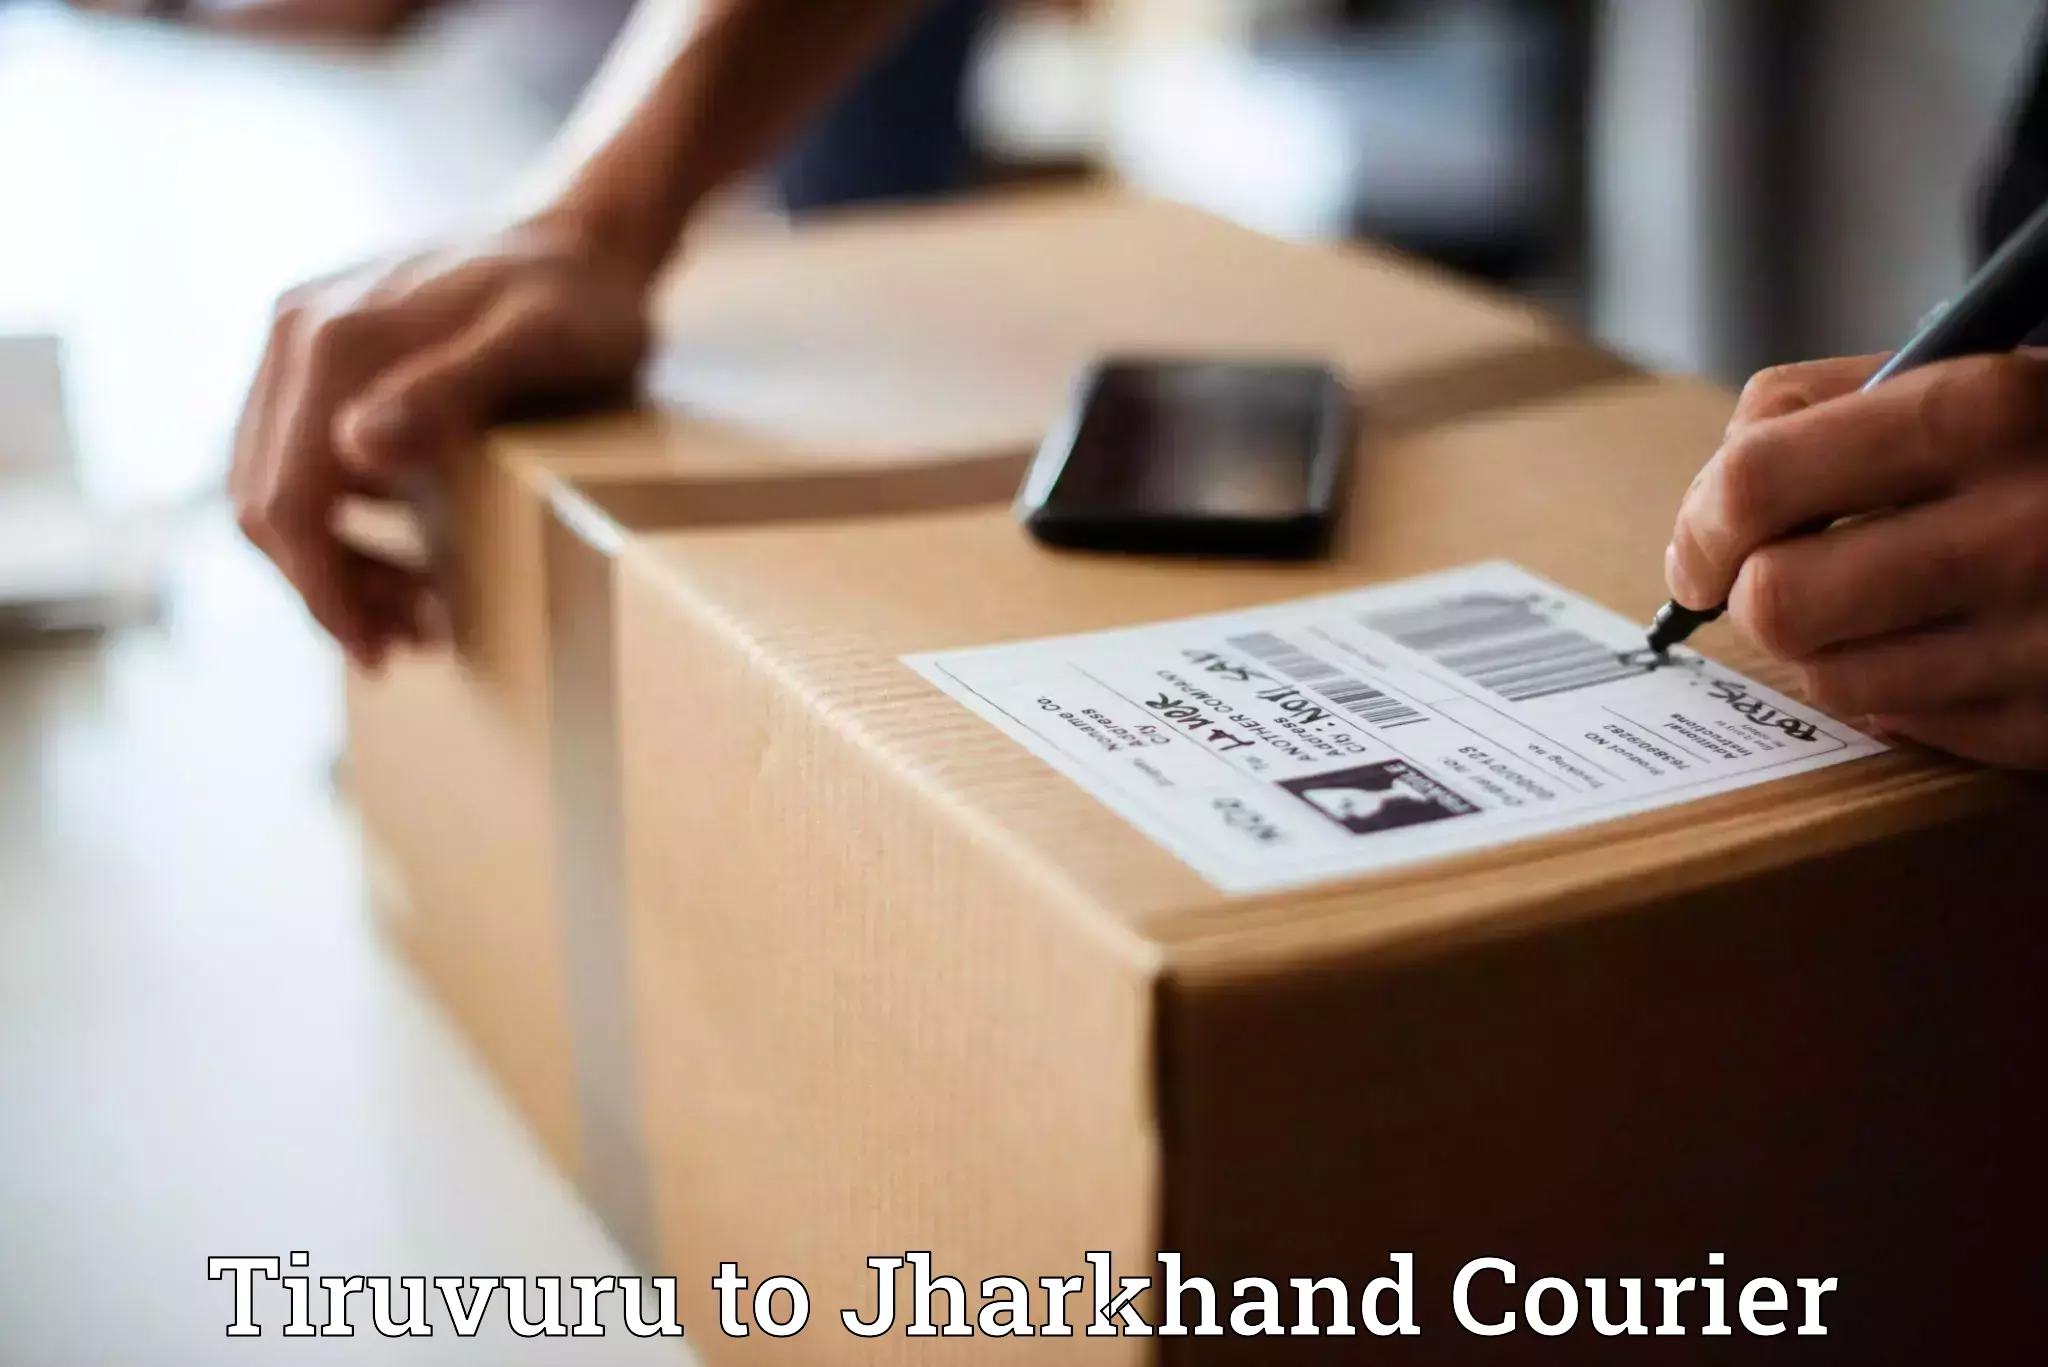 Courier app Tiruvuru to Jharkhand